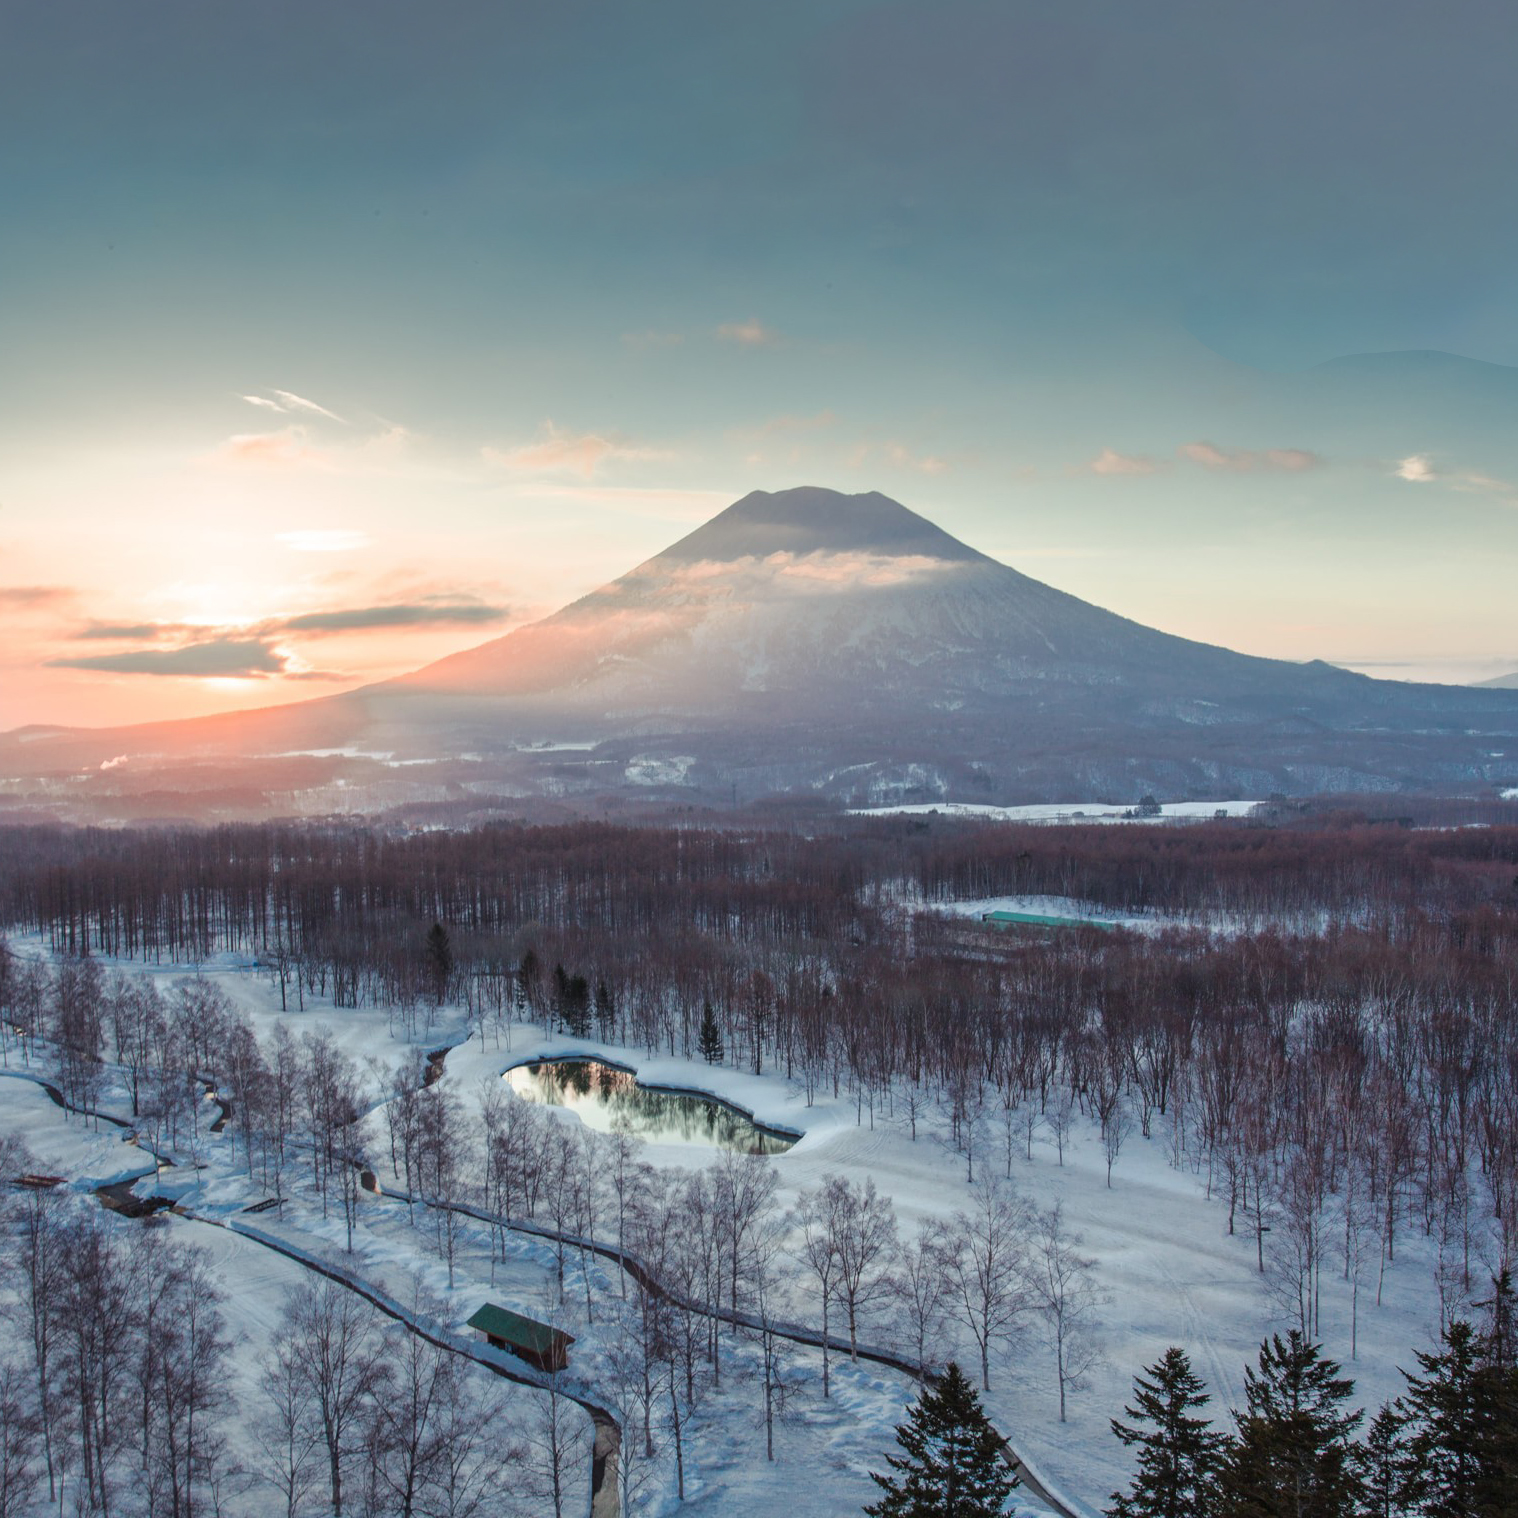 Mount Yotei on the island of Hokkaido